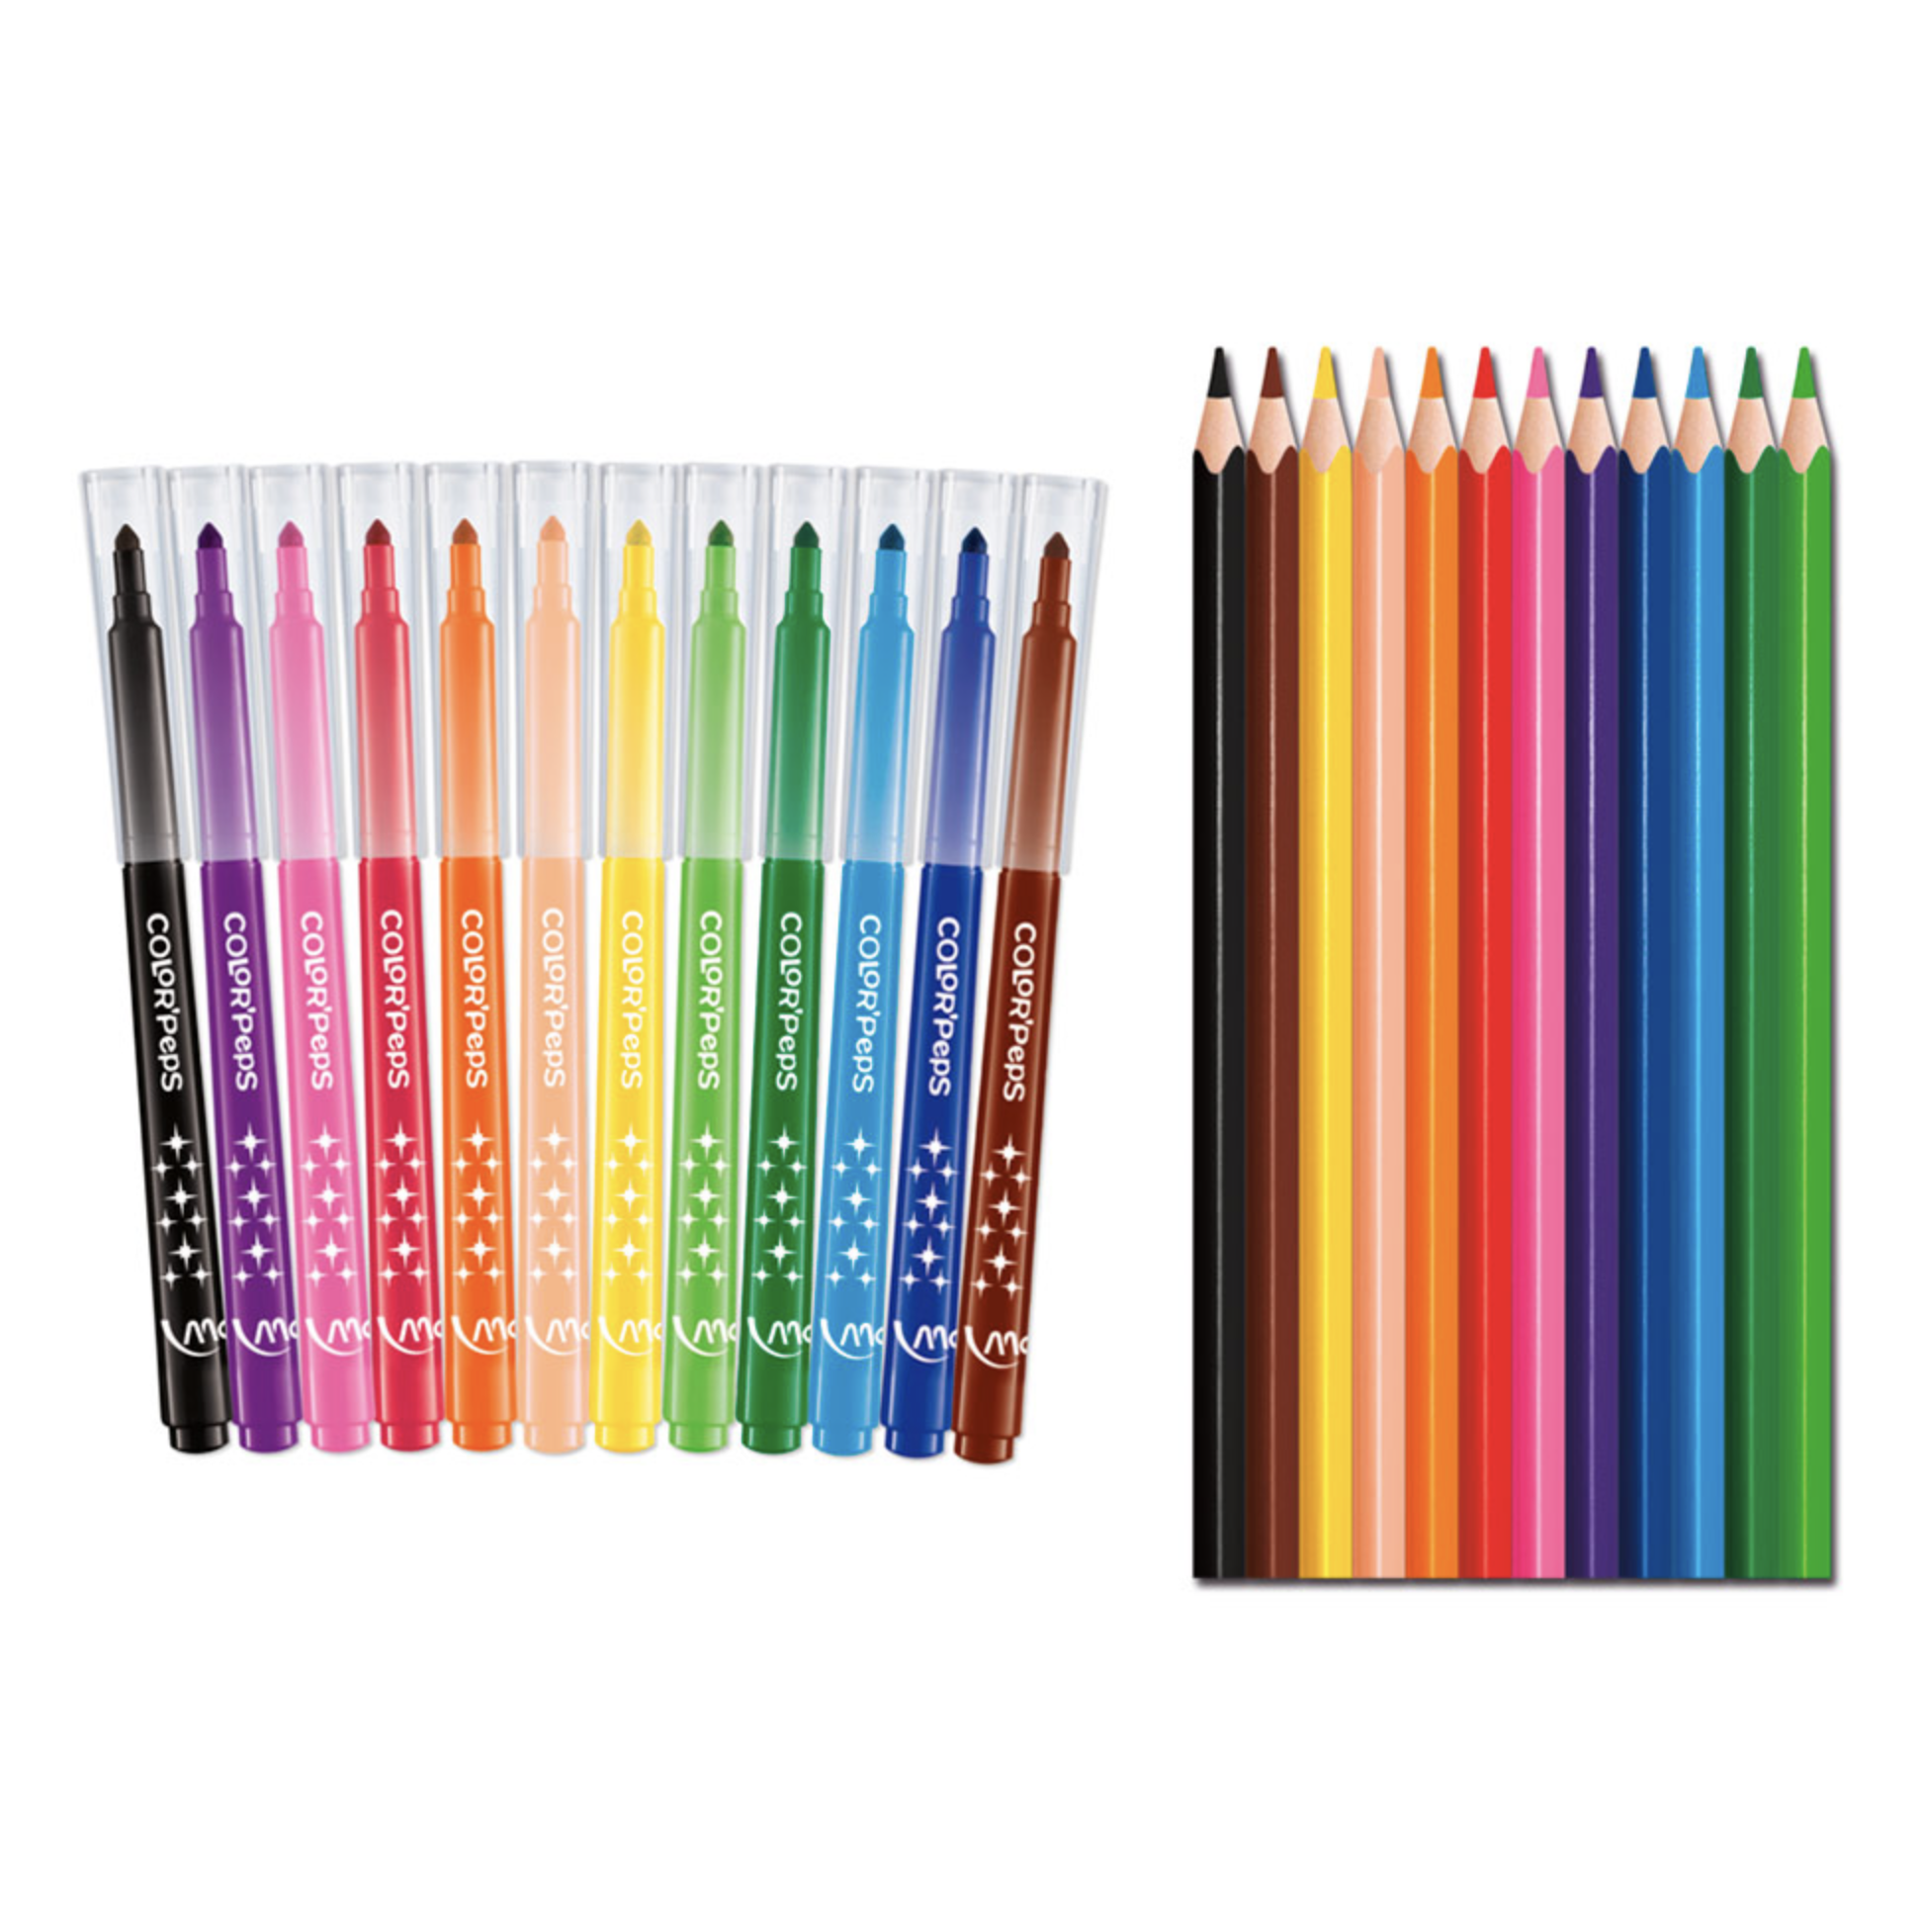 Trousse de 24 crayons de couleurs Polycolor par Lyra - Creastore